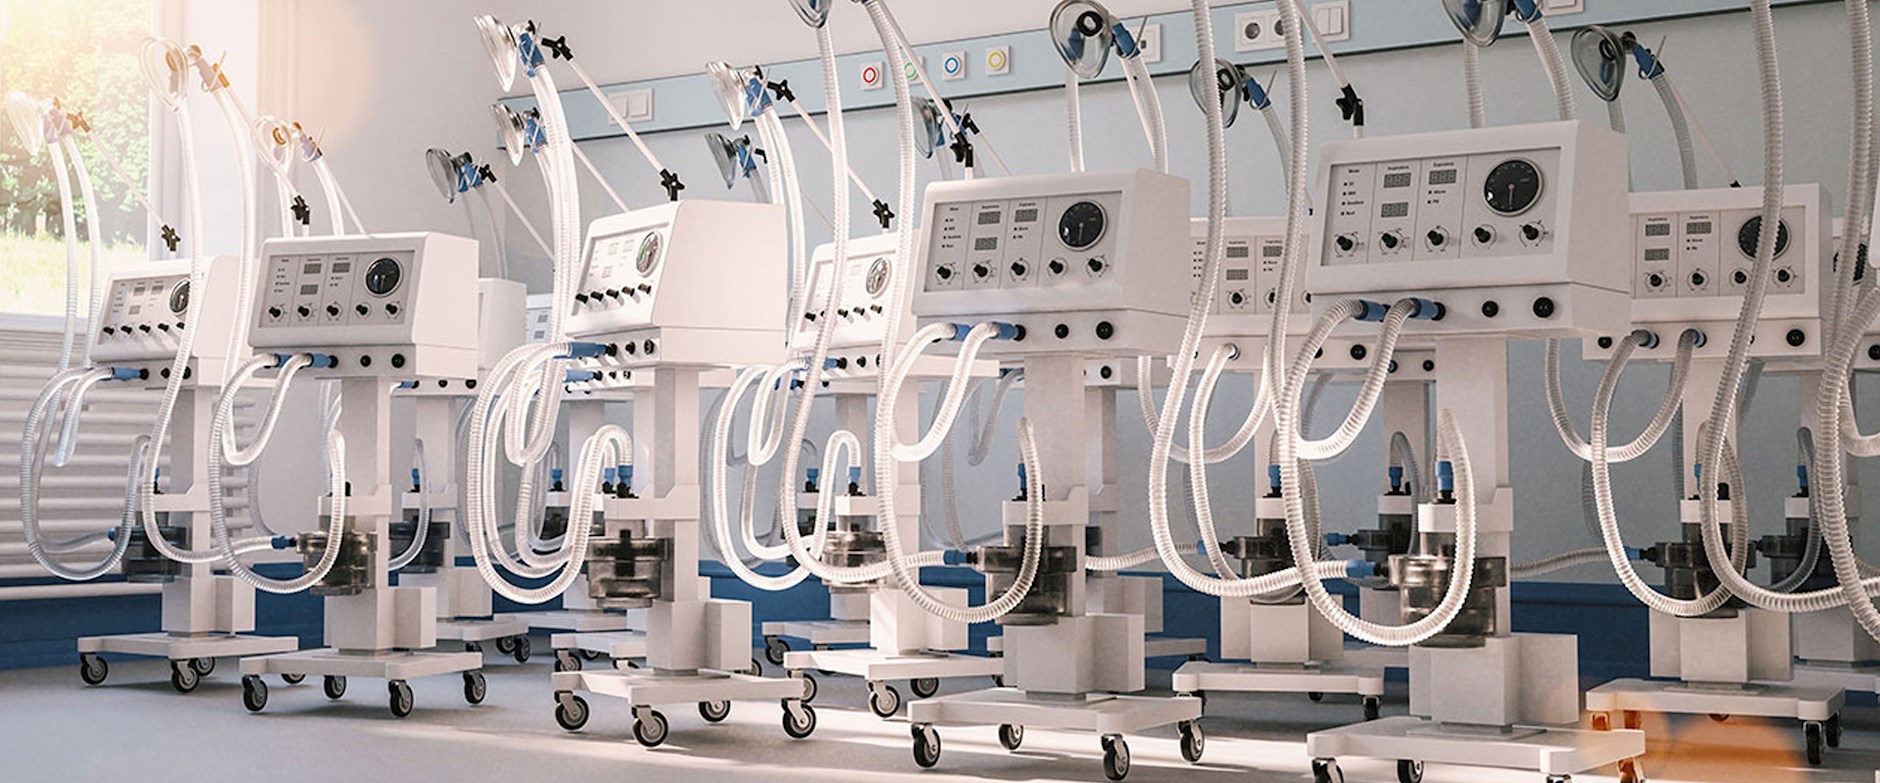 A row of ventilators in a hospital